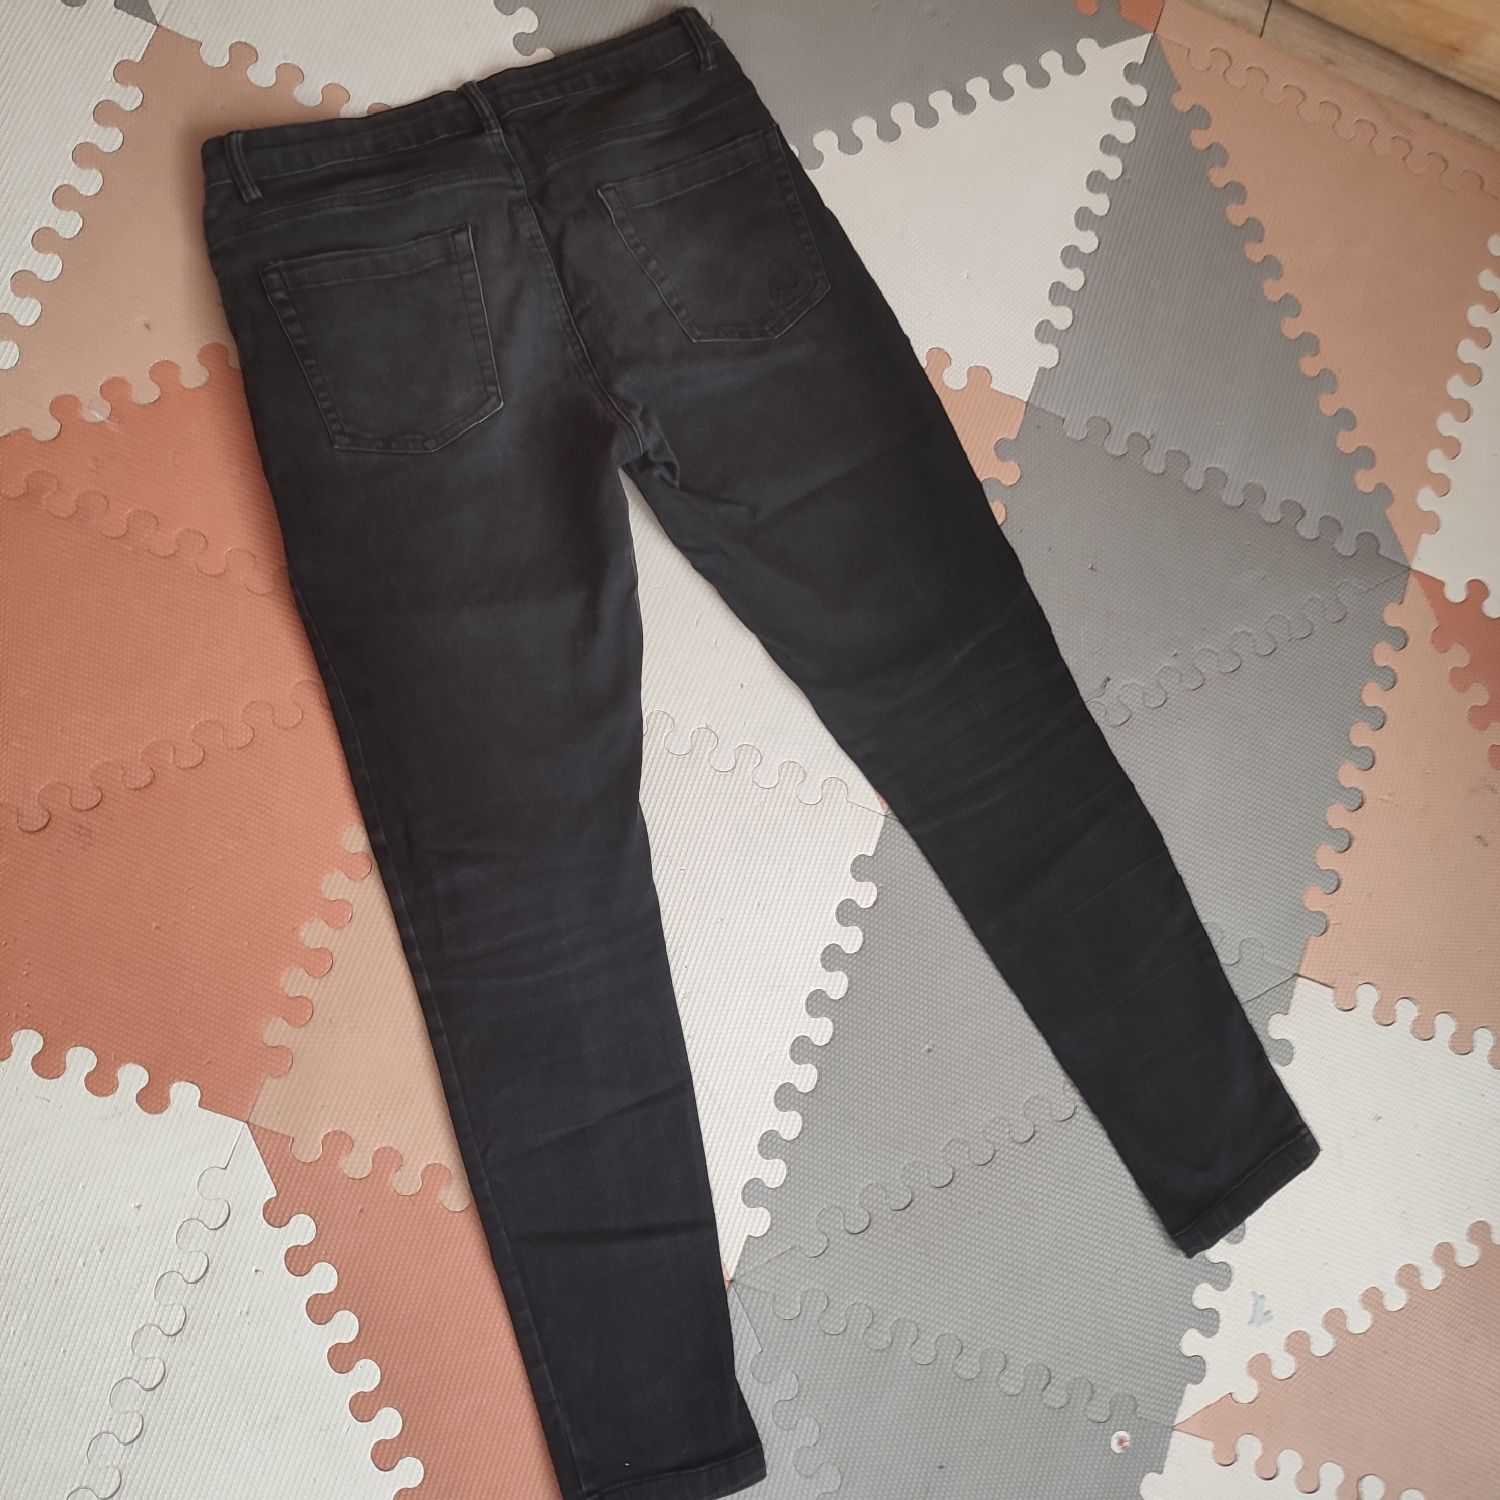 Spodnie jeansowe czarne r. 38 damskie